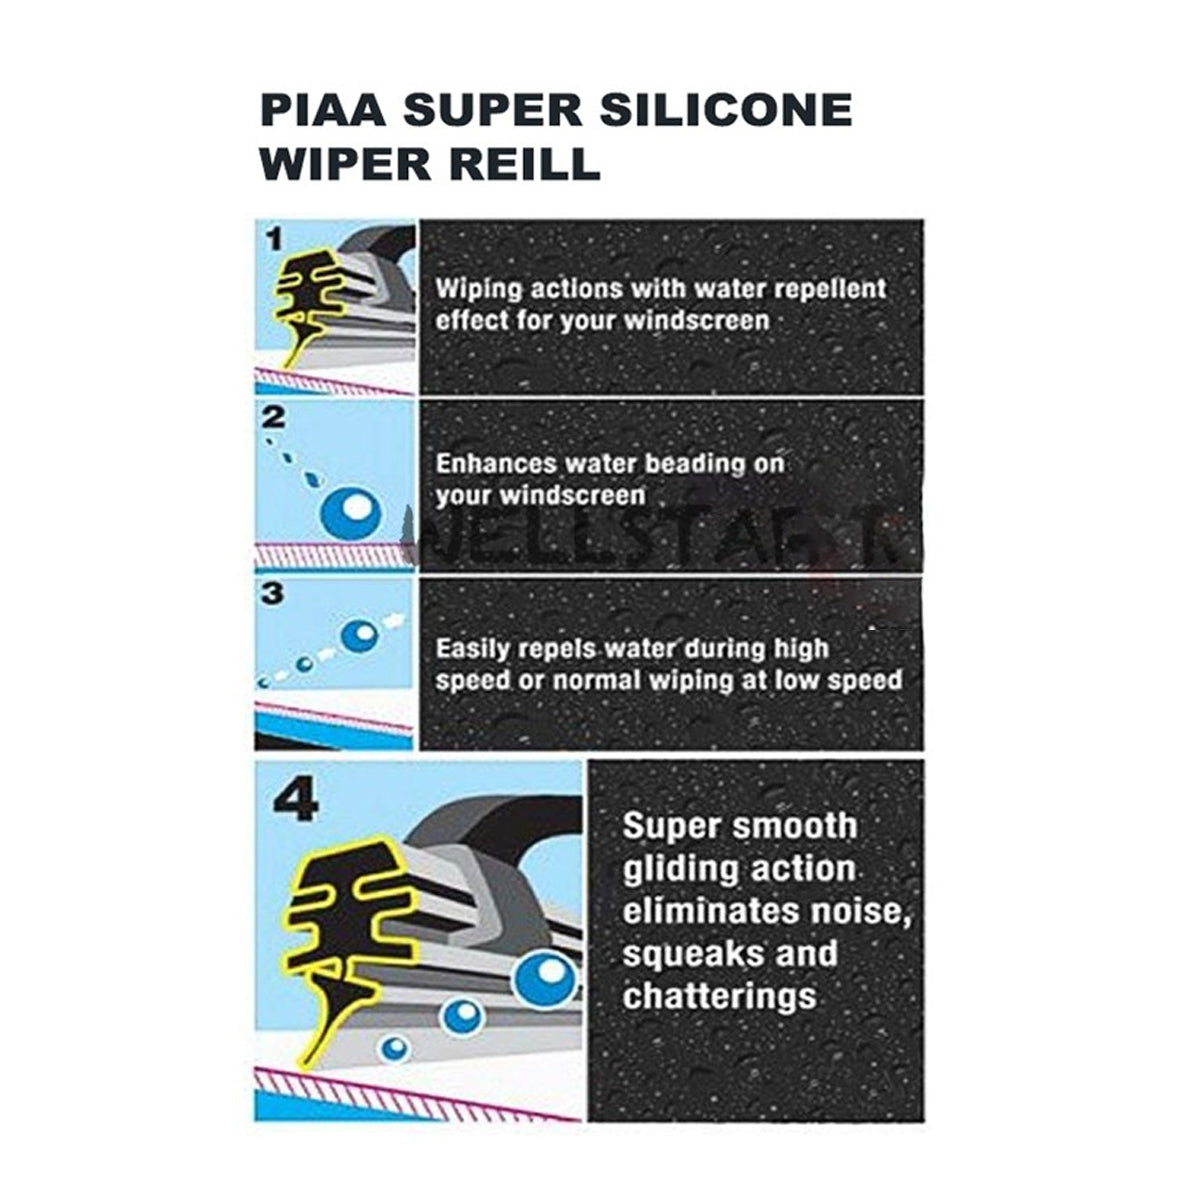 PIAA SILICONE WIPER REFILL for Radix & Aero Vogue Blade ( 16" ) ( 6mm ) (Barcode: 722935940403 )